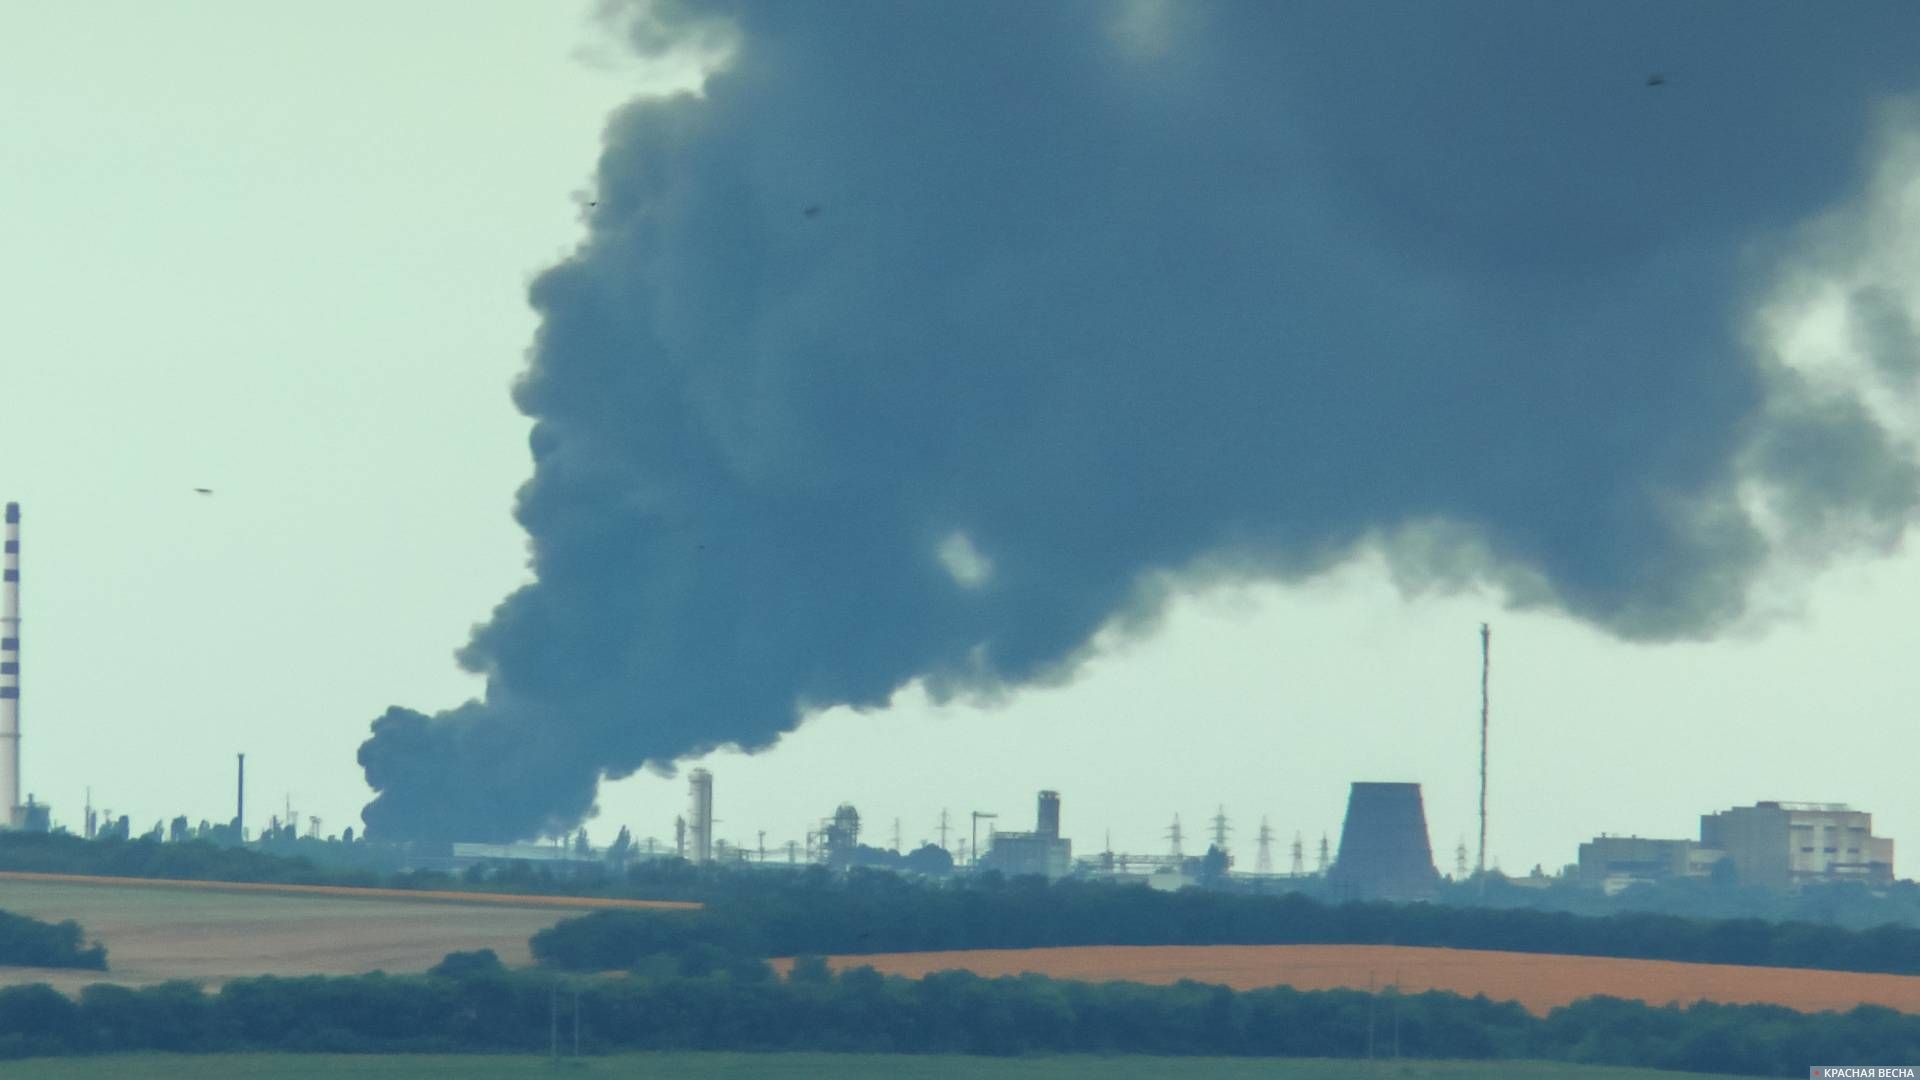 18 июля 2014 год Лисичанск Луганская область пожар на Лисичанском НПЗ после артиллирийского обстрела украинскими националистами